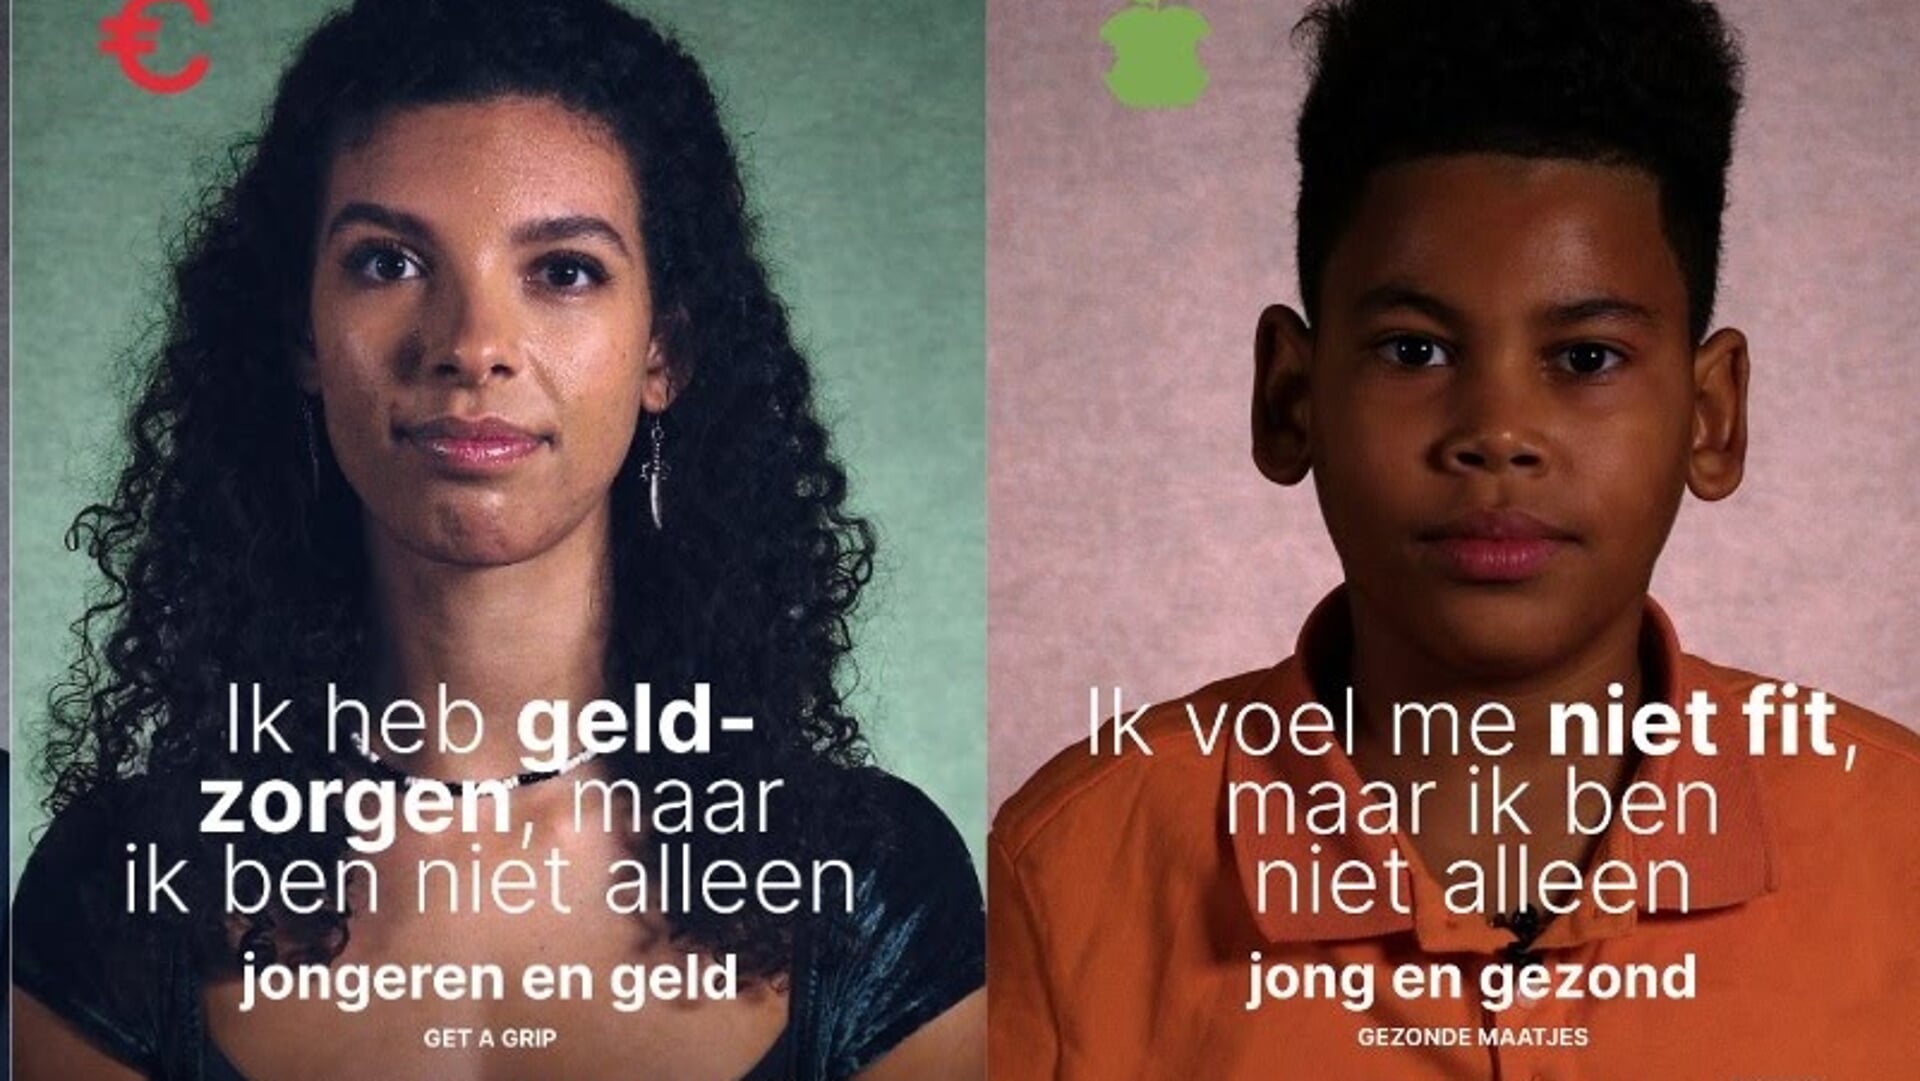 De campagne van Humanitas voor Amsterdamse jongeren die ondersteuning nodig hebben.